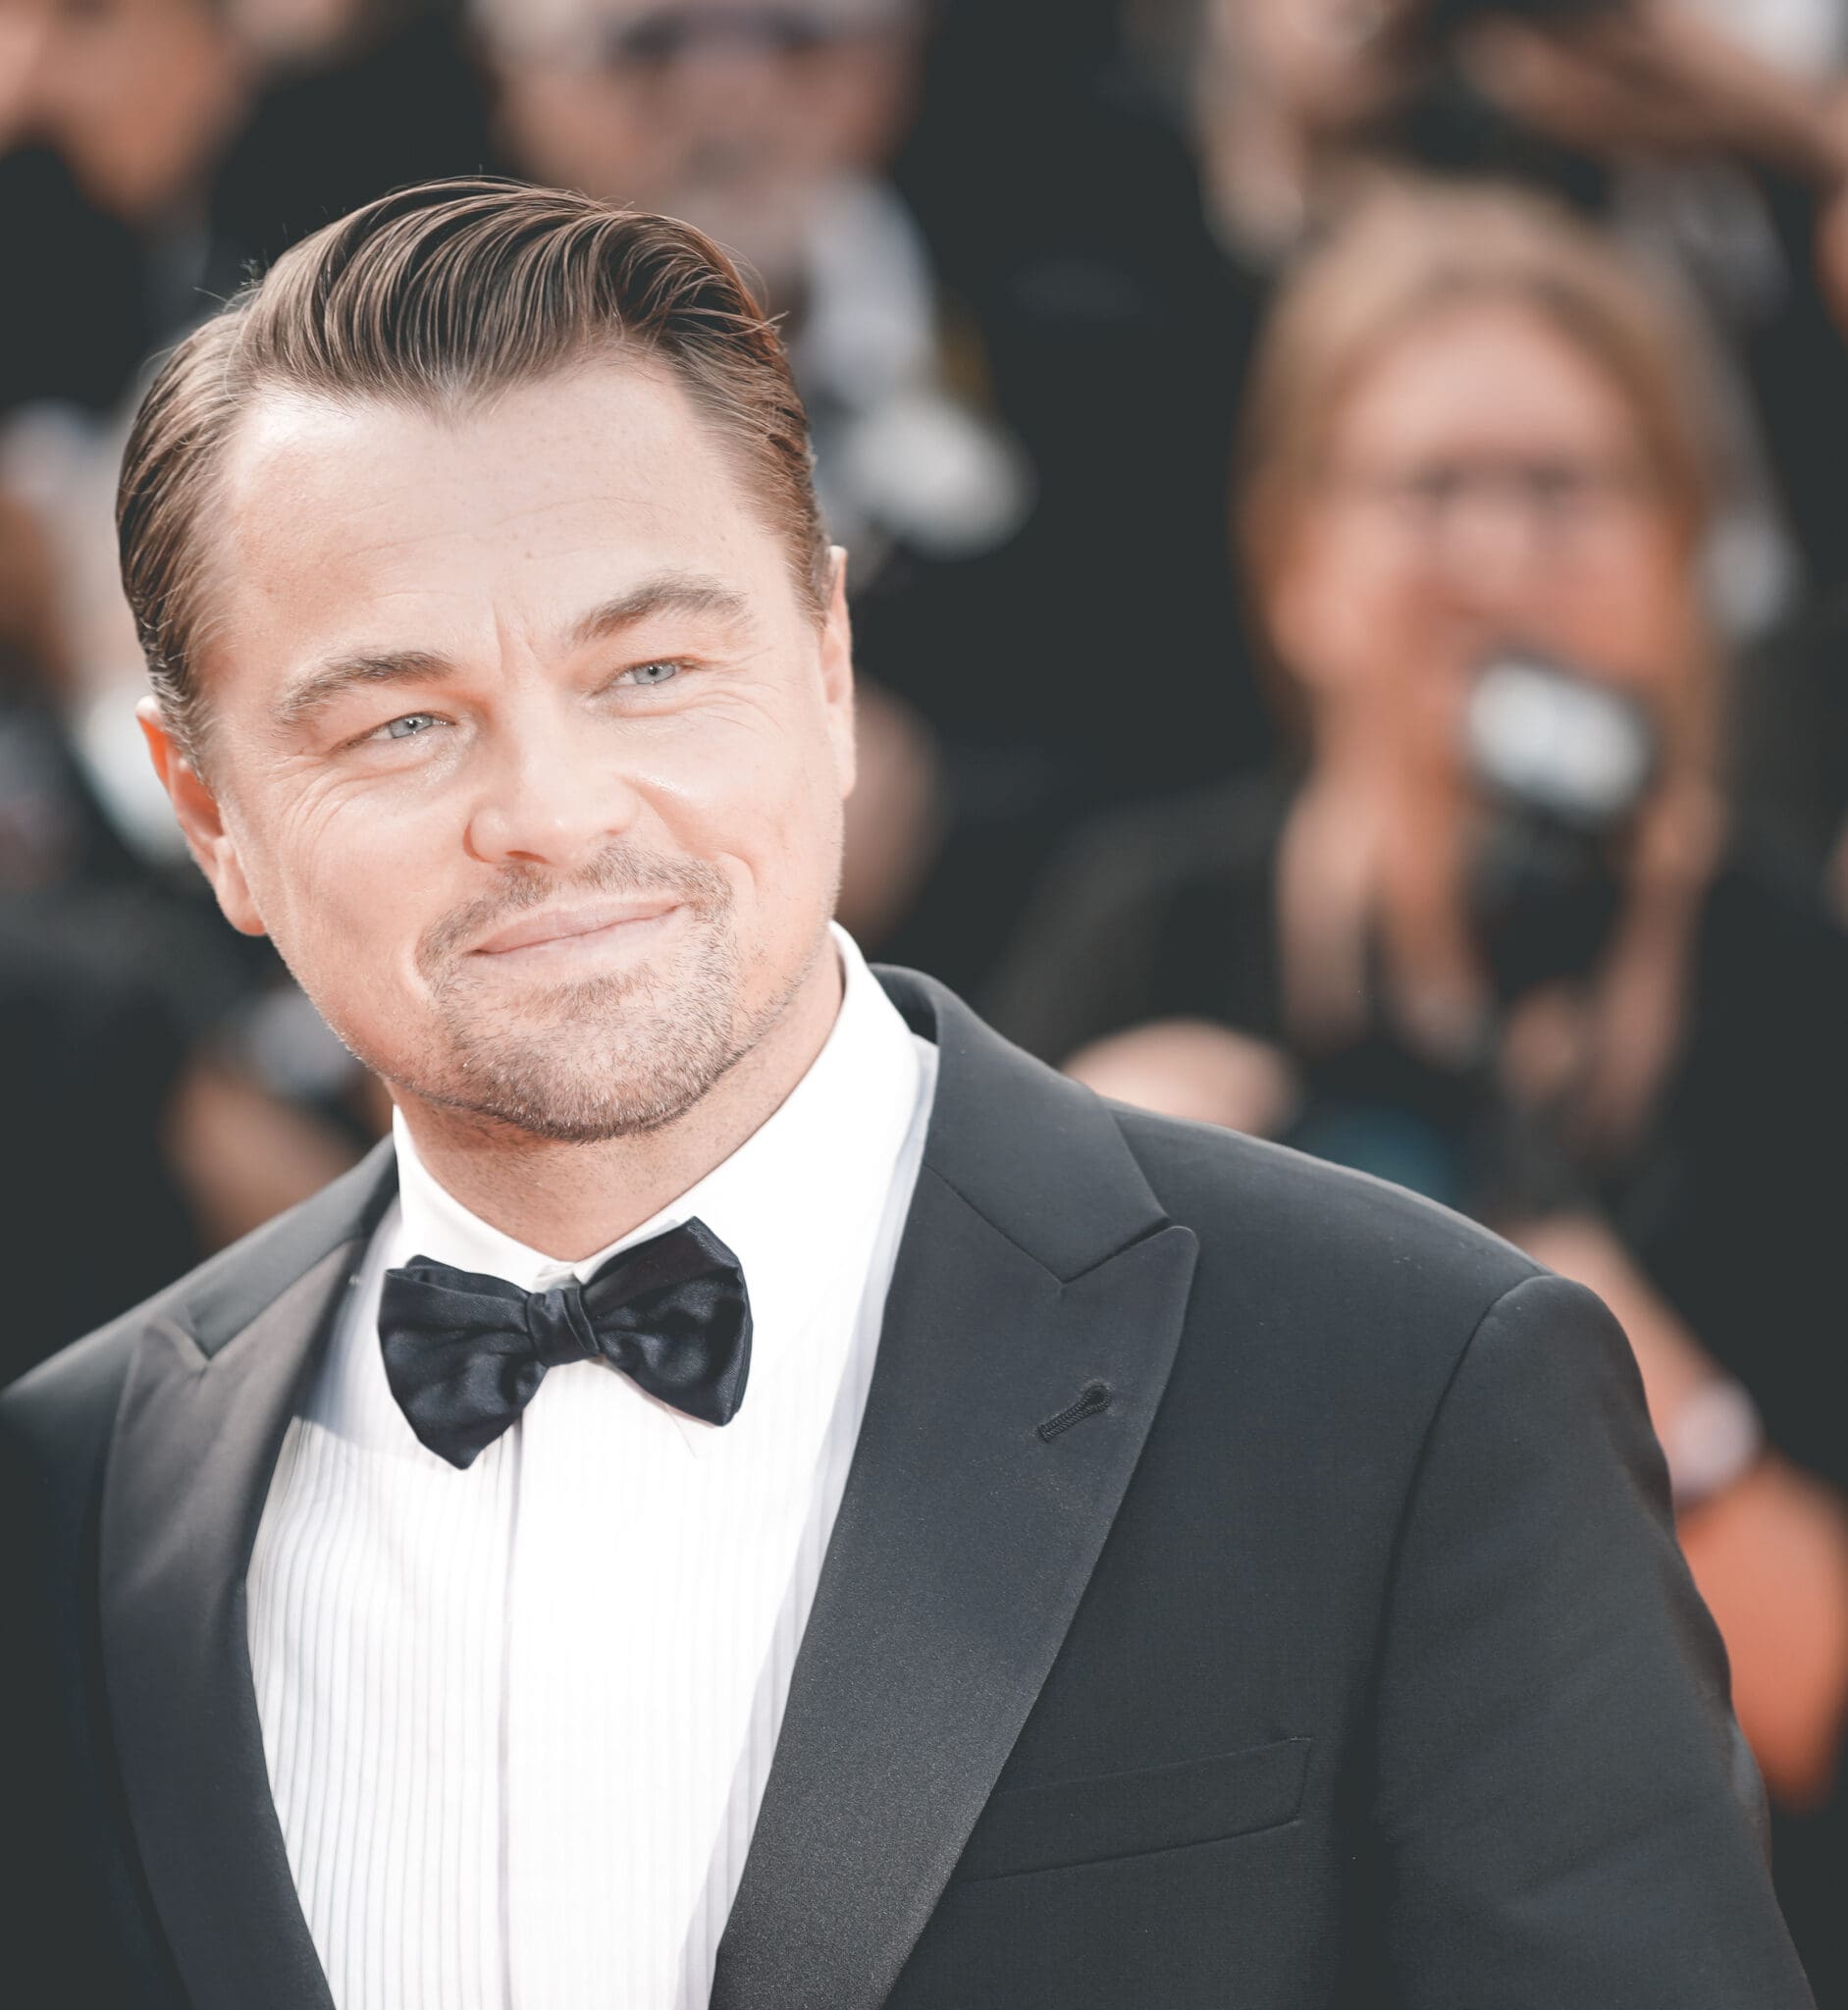 Sekte, Leonardo DiCaprio sleept hoofdrol als sekte-leider binnen